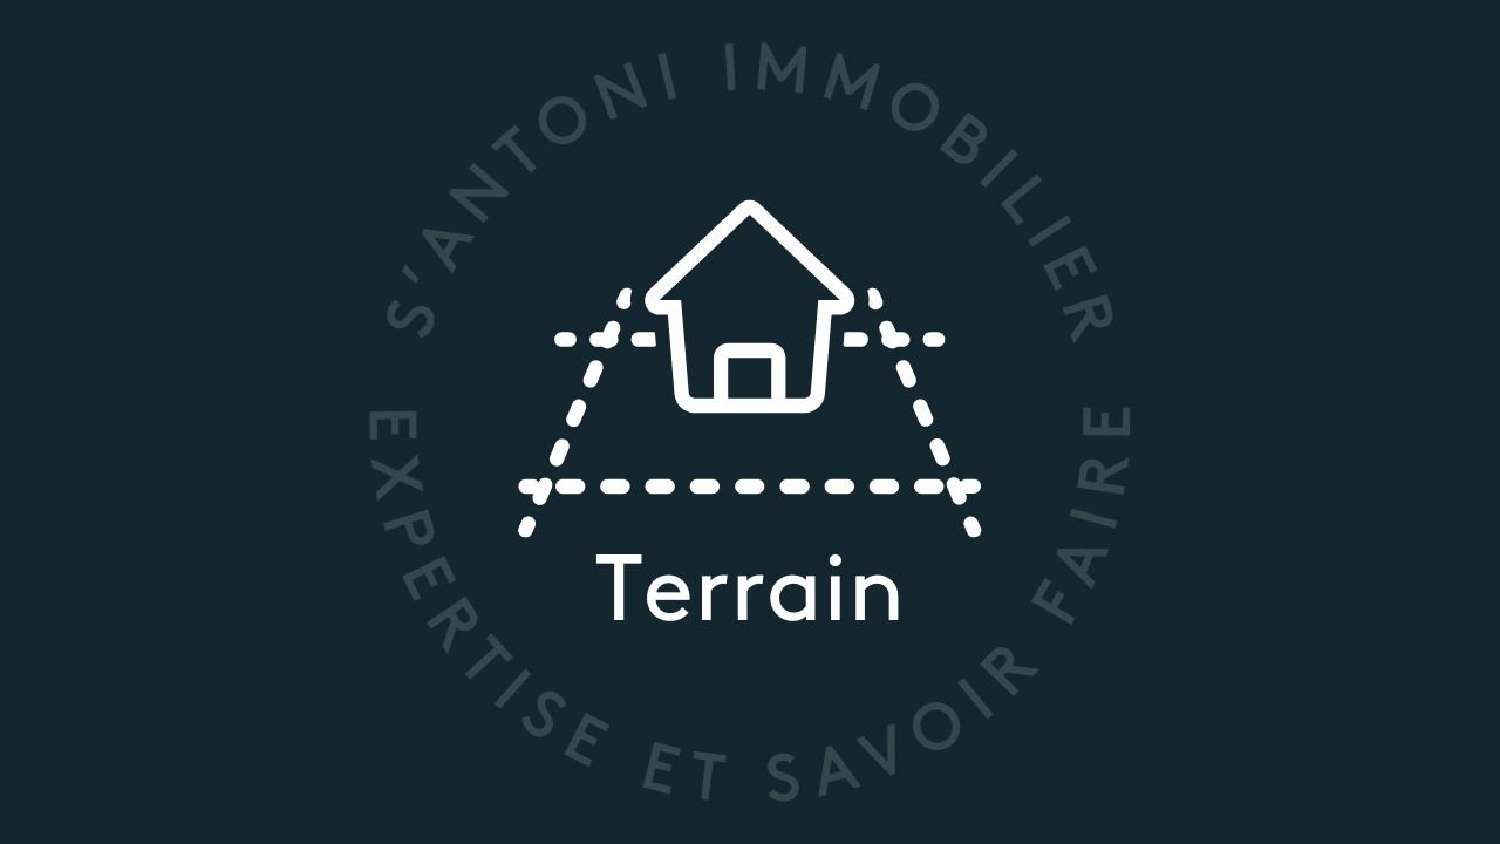  kaufen Grundstück Sauvian Hérault 2